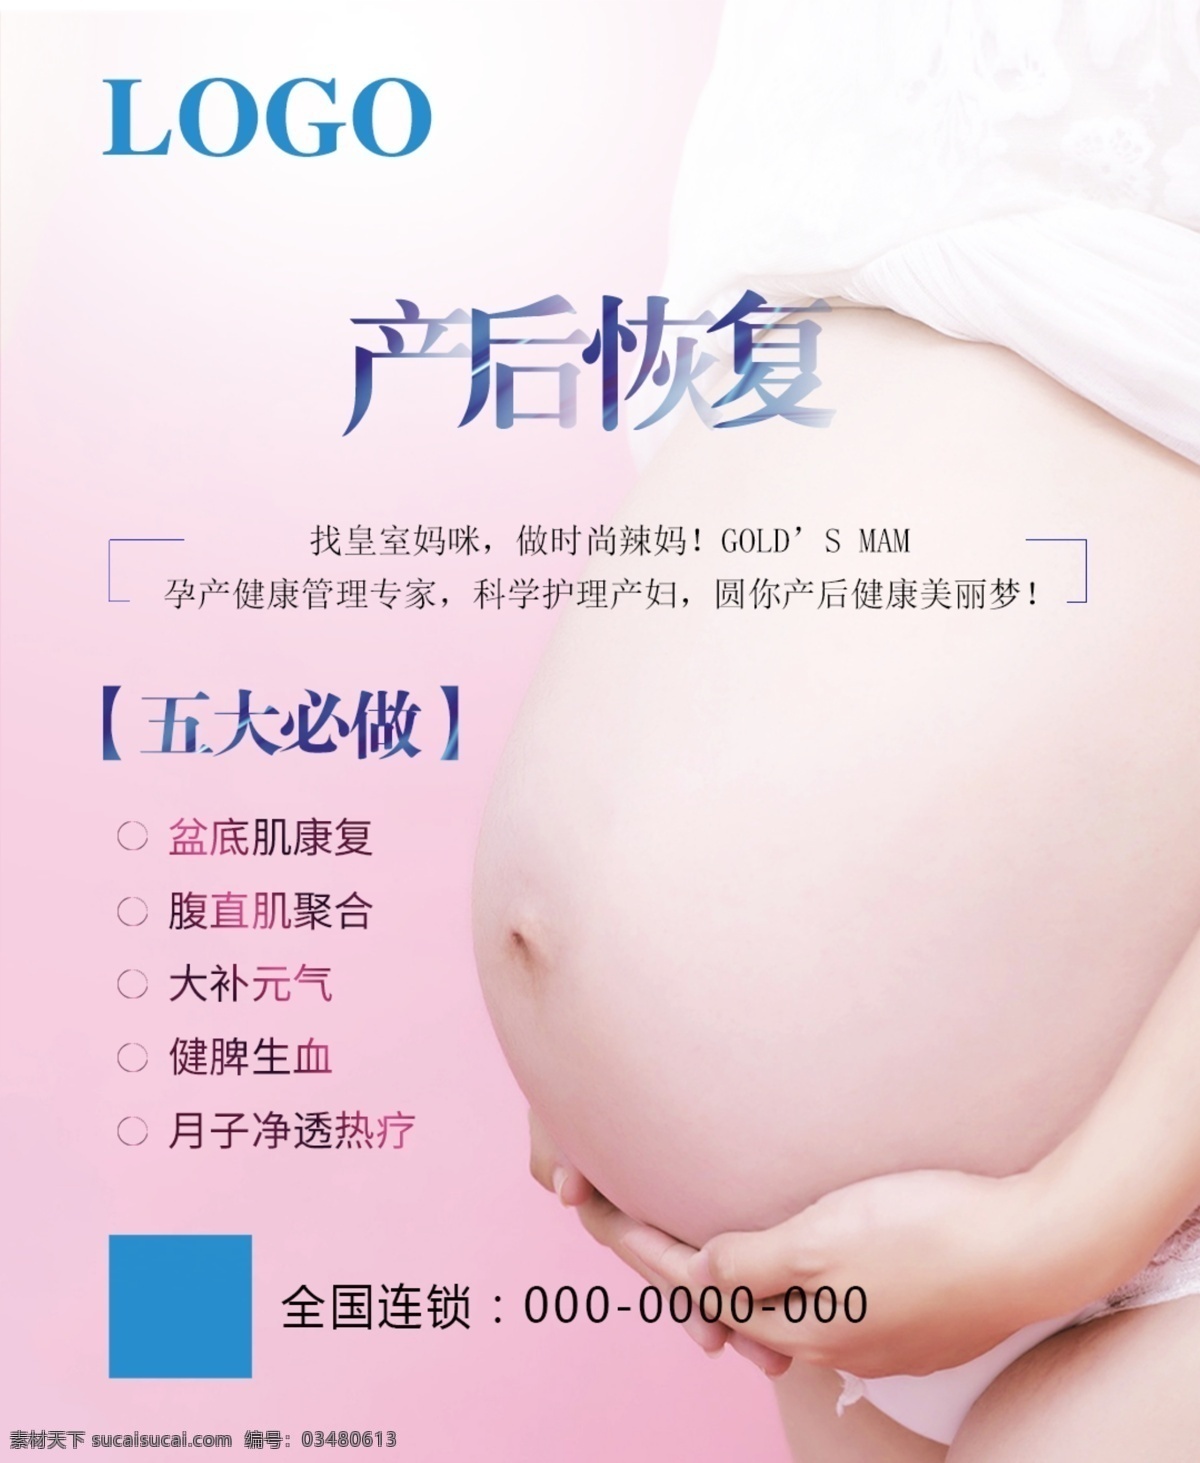 产后修复图片 产后修复 海报 广告 源文件 电梯广告 女人 身材 元素 纱布 背景 孕妇 婴儿